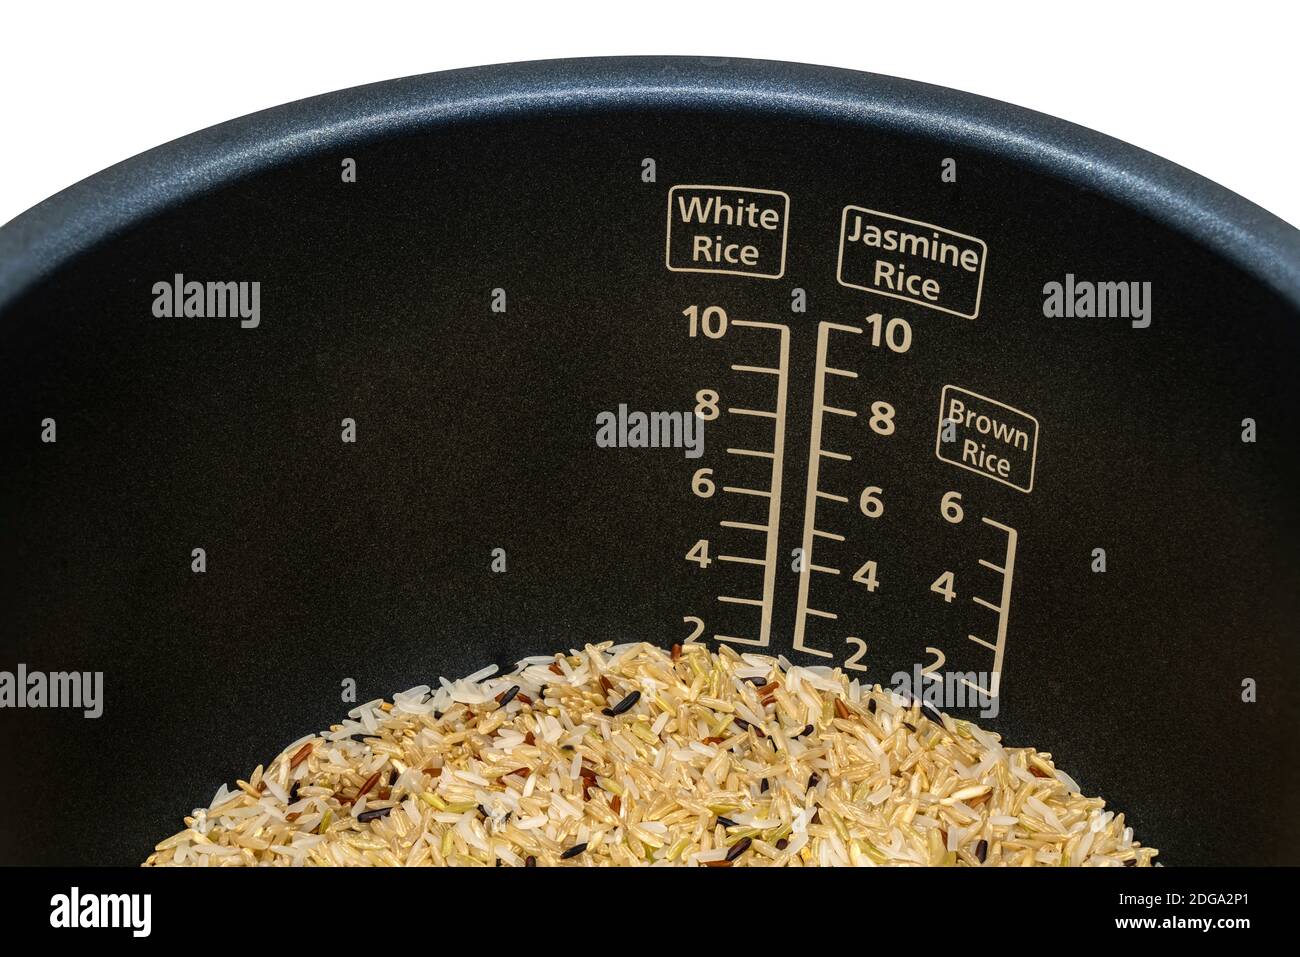 Nahaufnahme Messung skalierten inneren Topf des elektrischen Reiskocher mit braunem Reis vor dem Kochen. Messung skaliert für verschiedene Reissorten, weiß, Jasmin Stockfoto